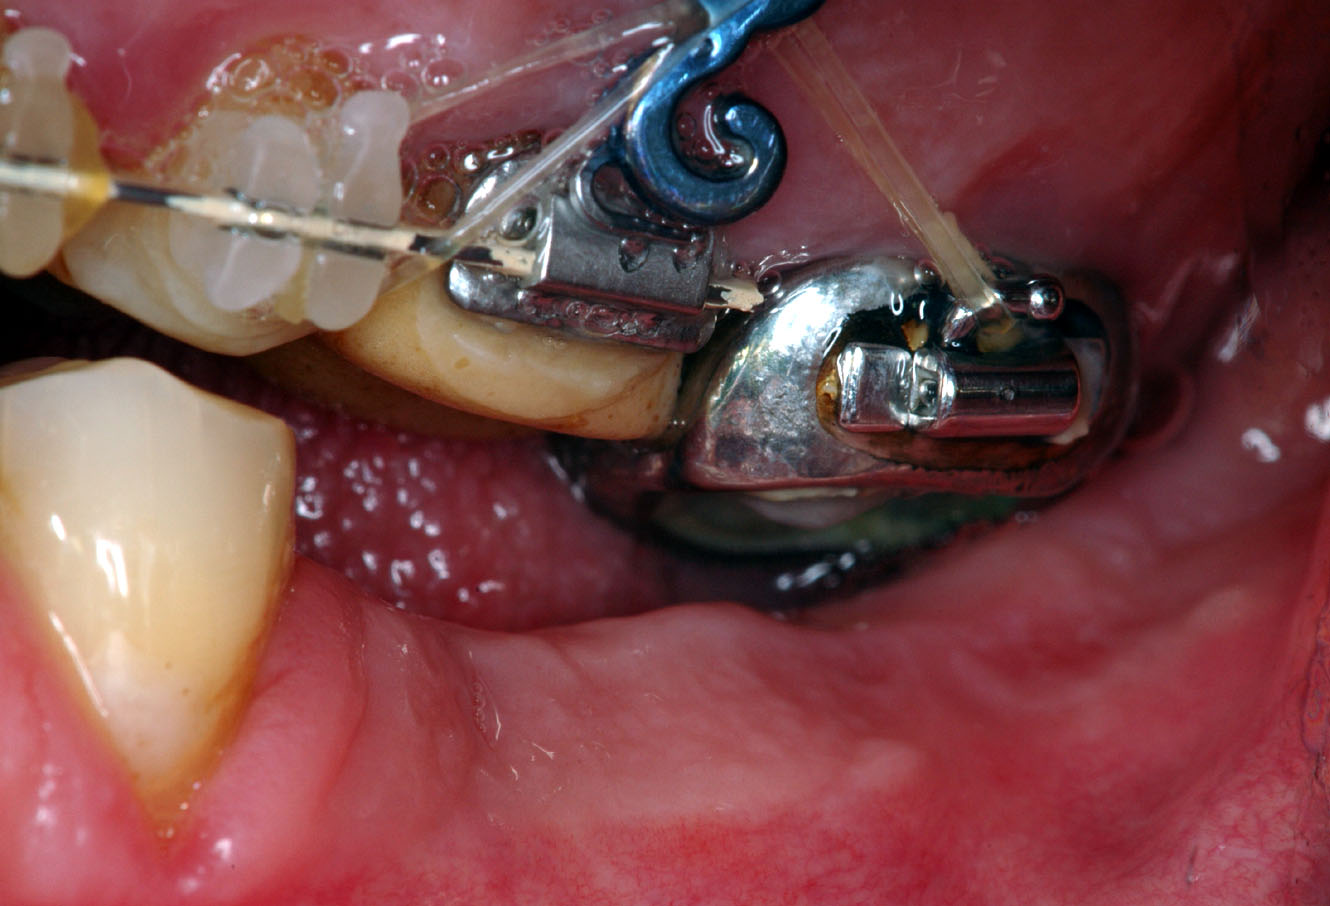 Traitement orthodontique